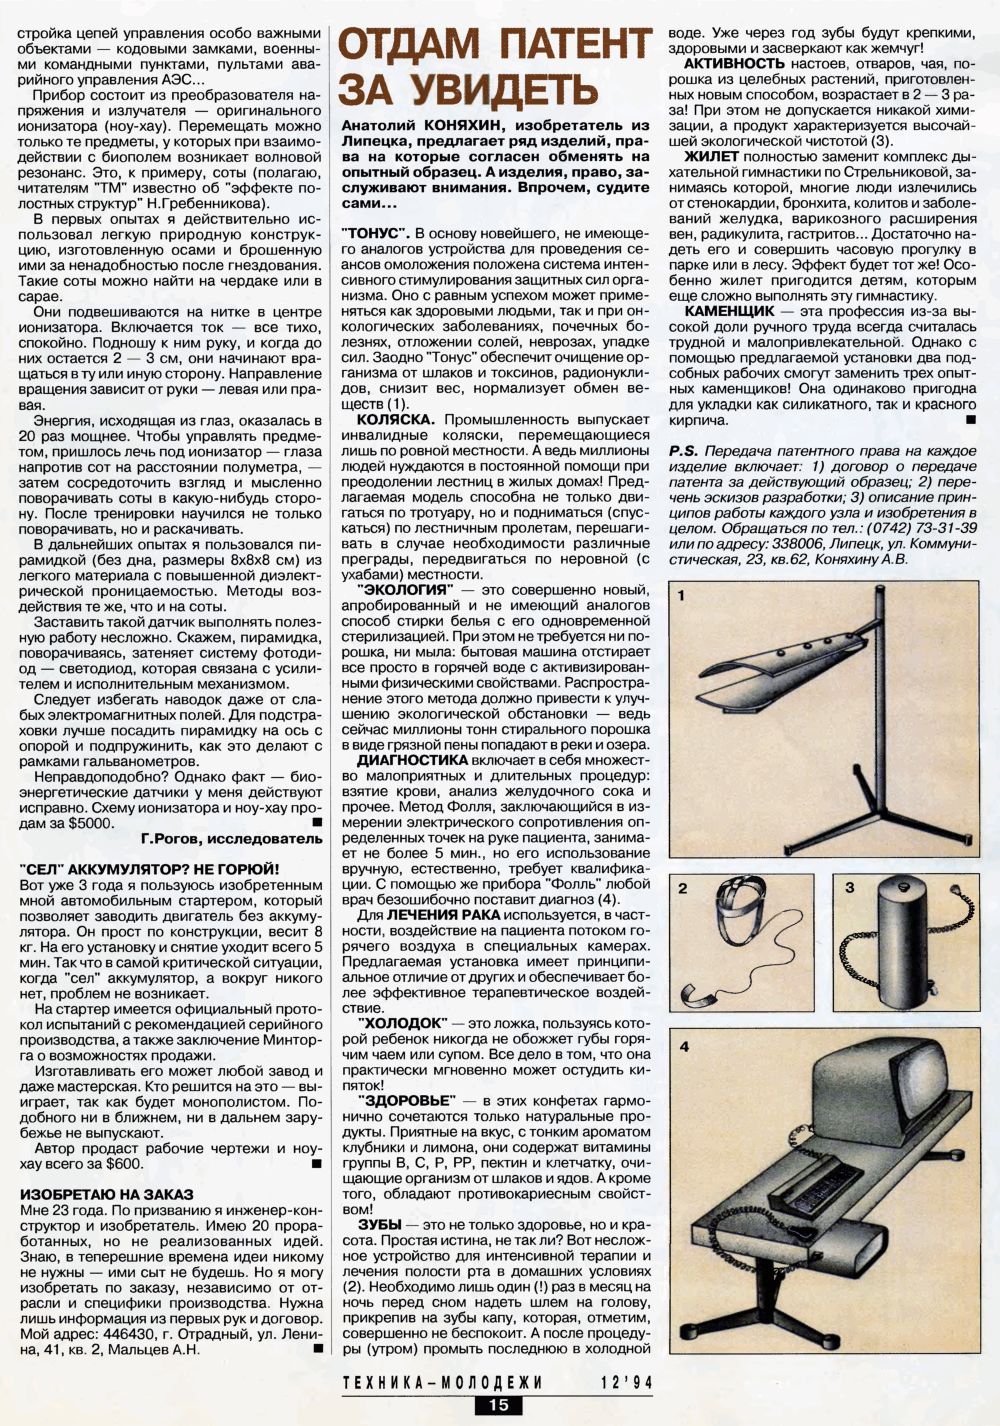 Экстрасенсорный ионизатор. Г. Рогов. Техника — Молодёжи, 1994, №12, с.14-15. Фотокопия №2